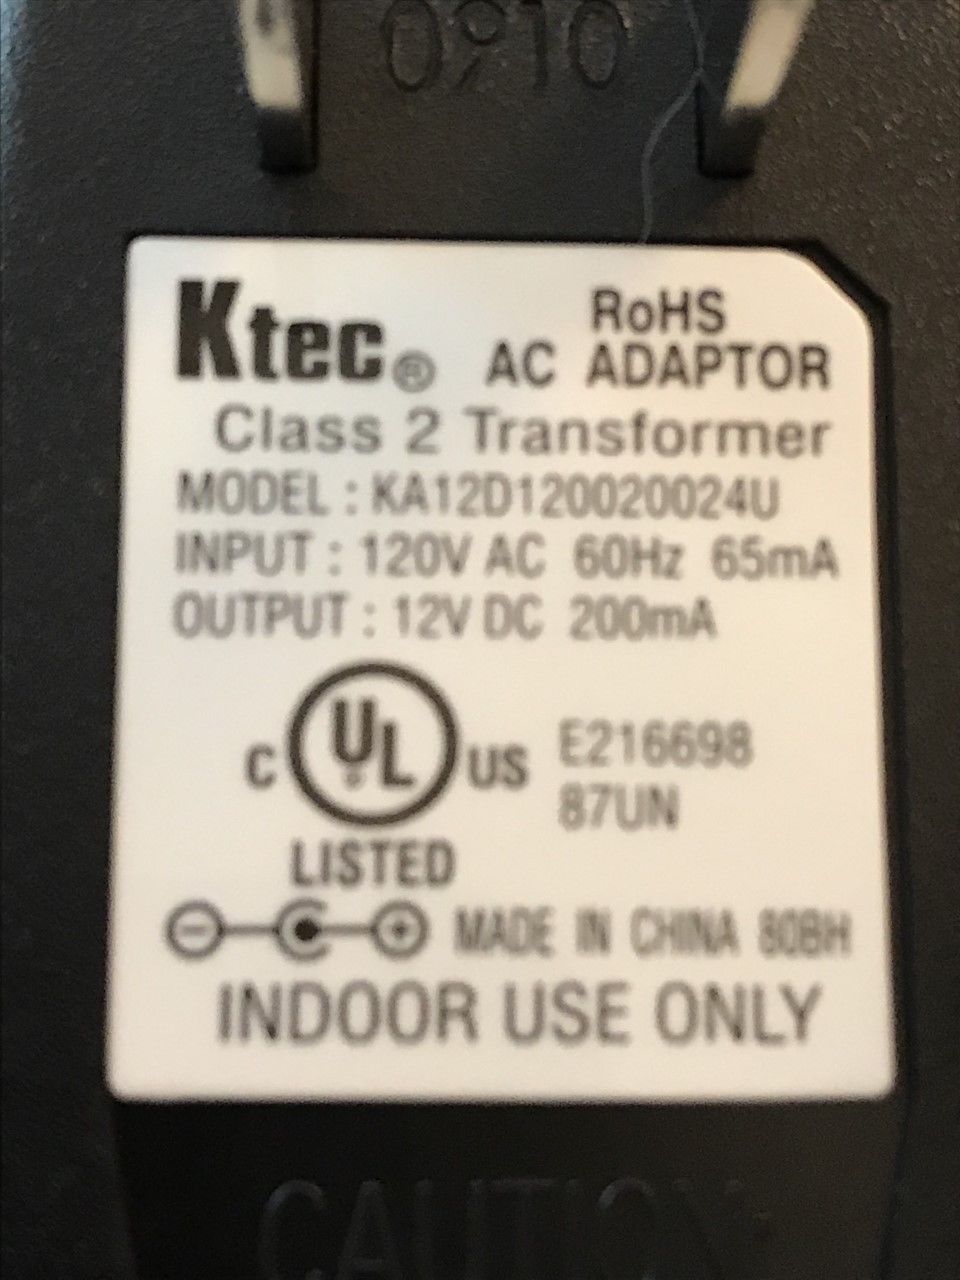 New 12V 200mA Ktec KA12D120020024U Class 2 Transformer Power Supply Ac Adapter - Click Image to Close